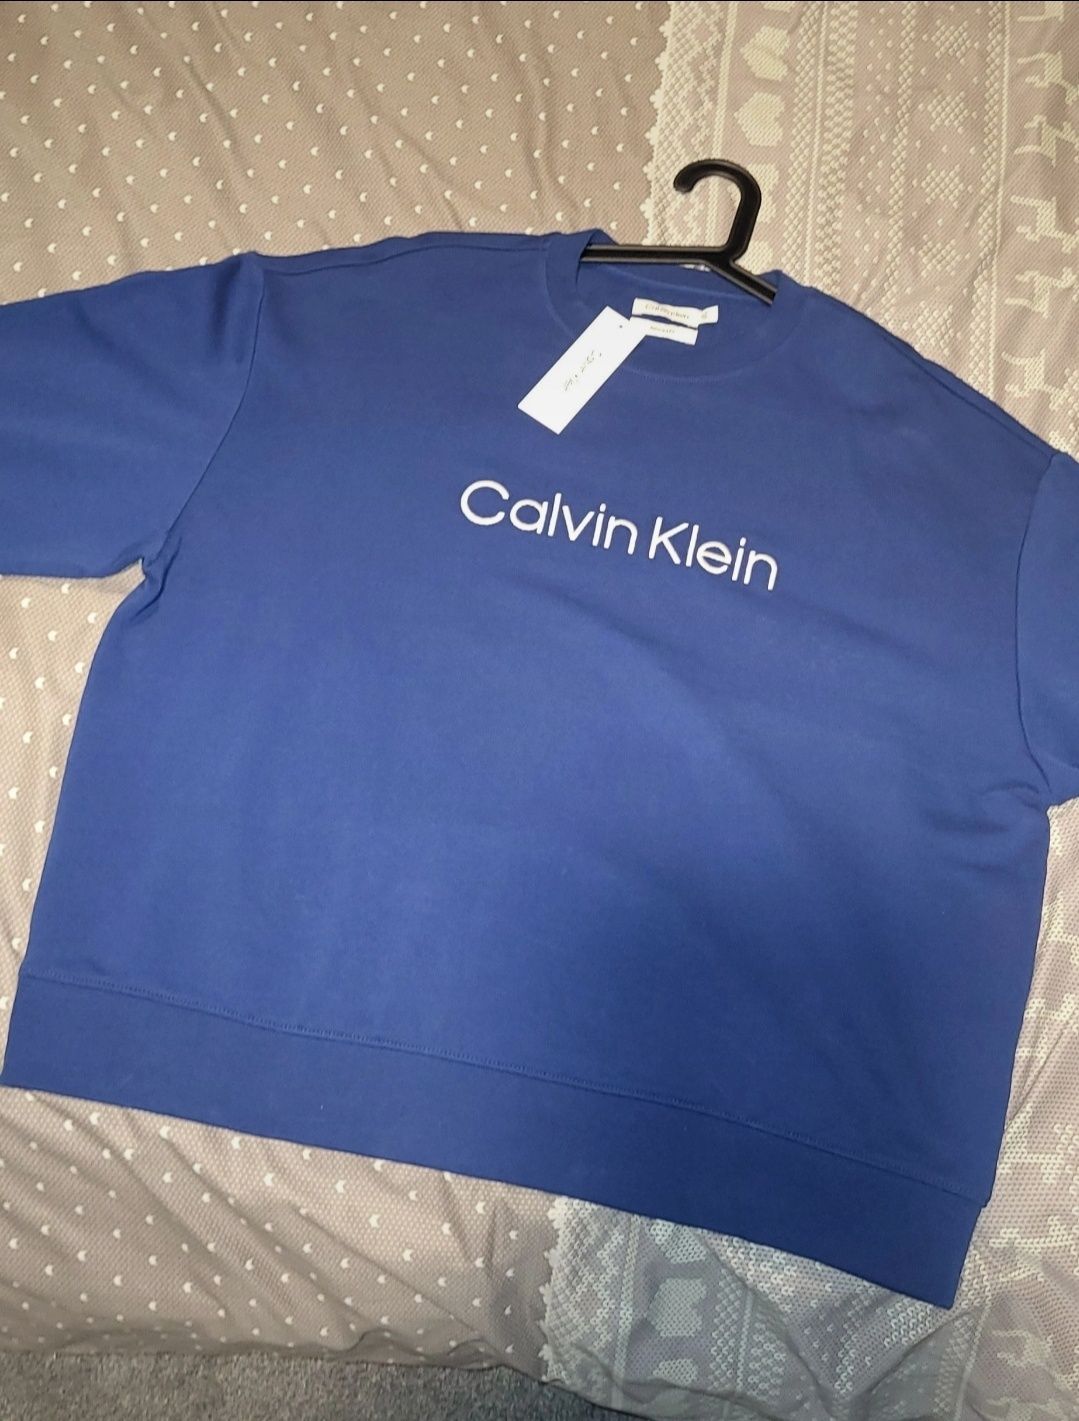 Bluza bez kaptura Calvin Klein L nowa niebieska bawełna przez głowę